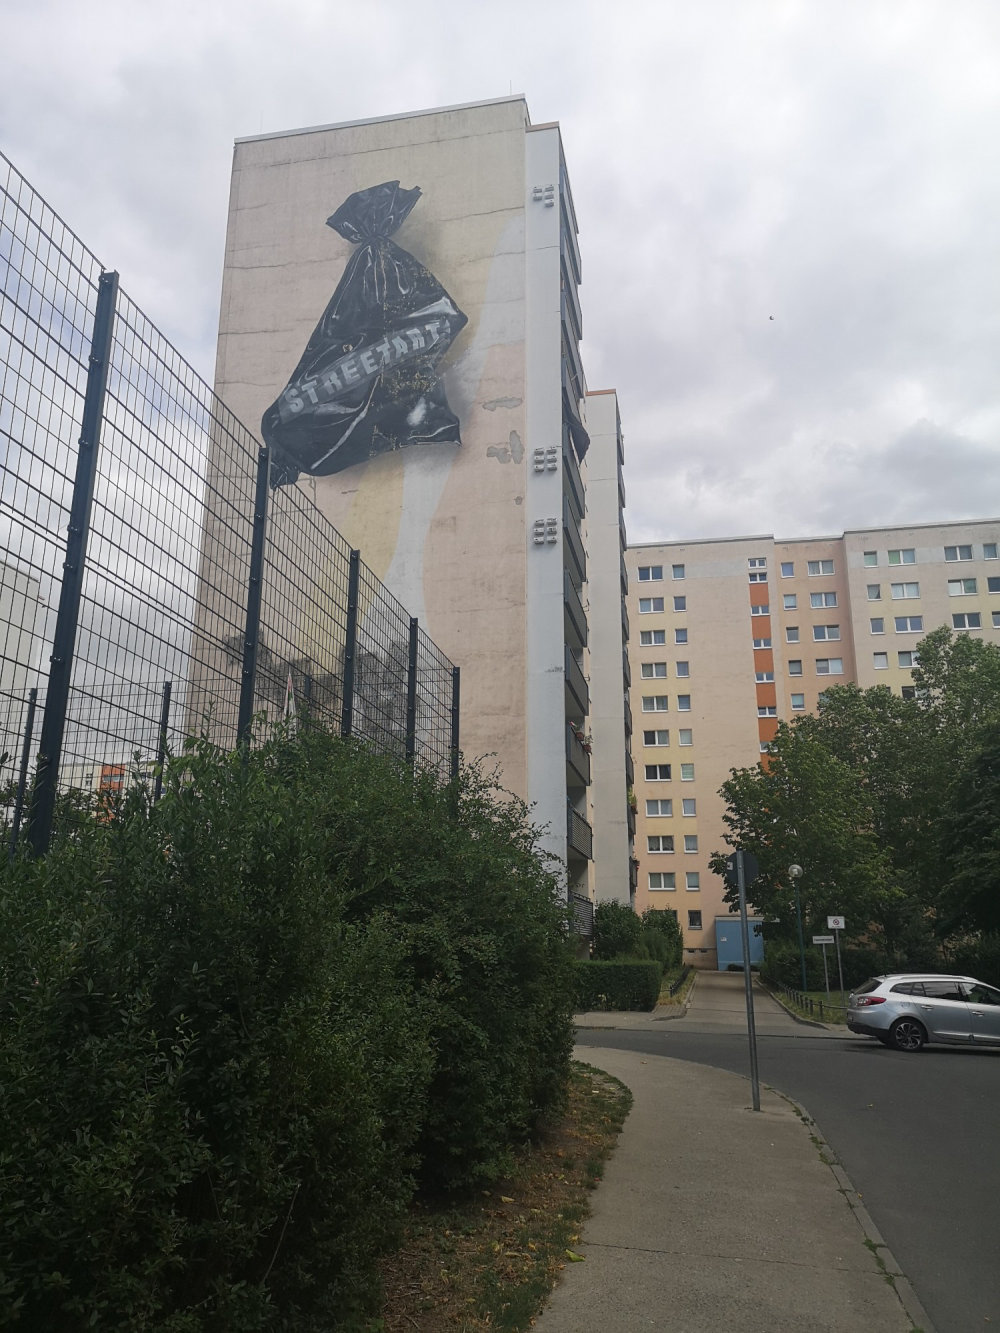 mural in Berlin by artist unknown.